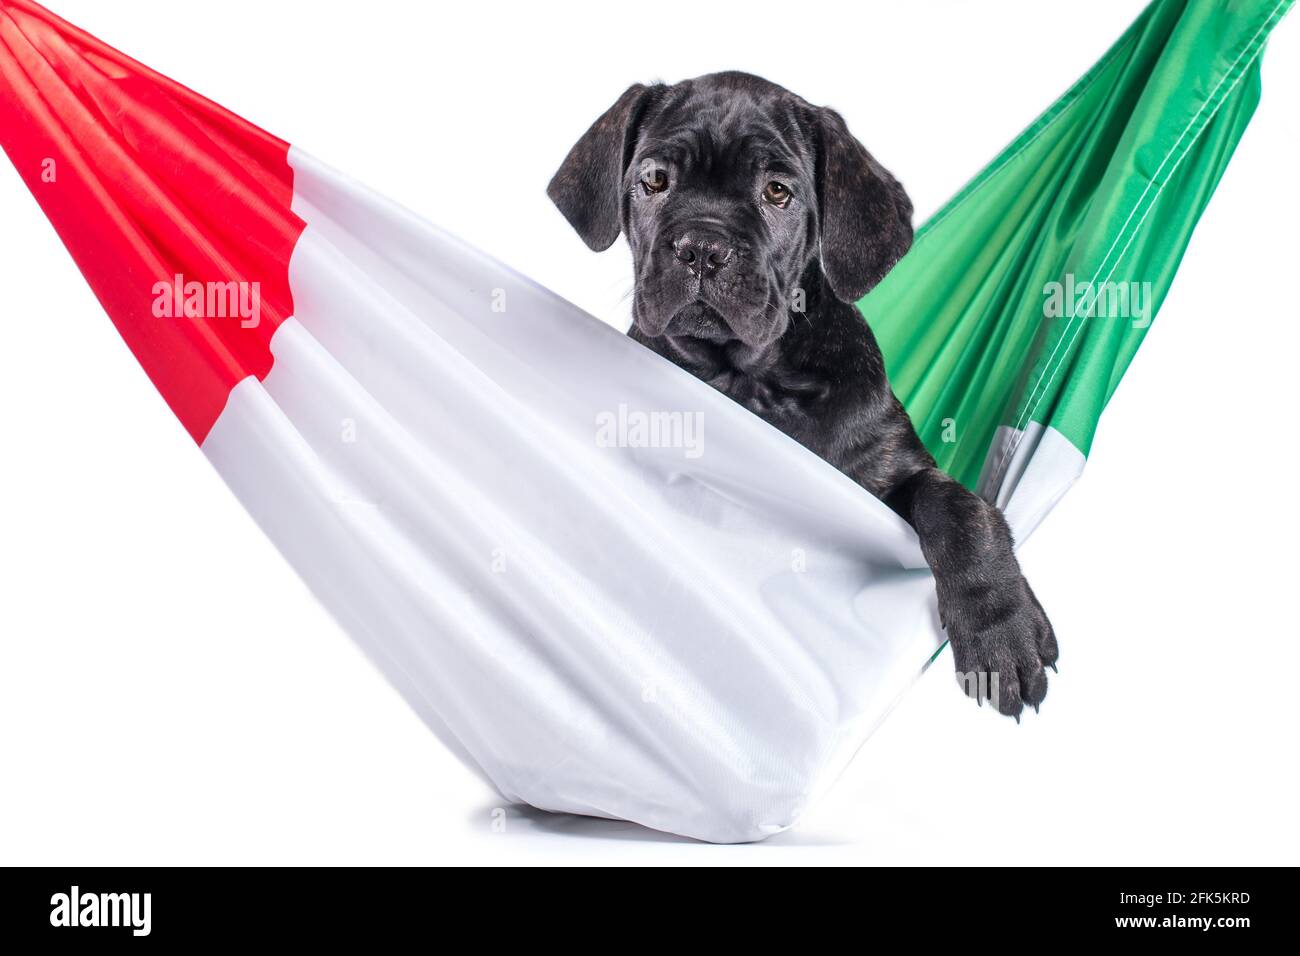 la petite canne noire corso chiot ronge un drapeau italien Banque D'Images